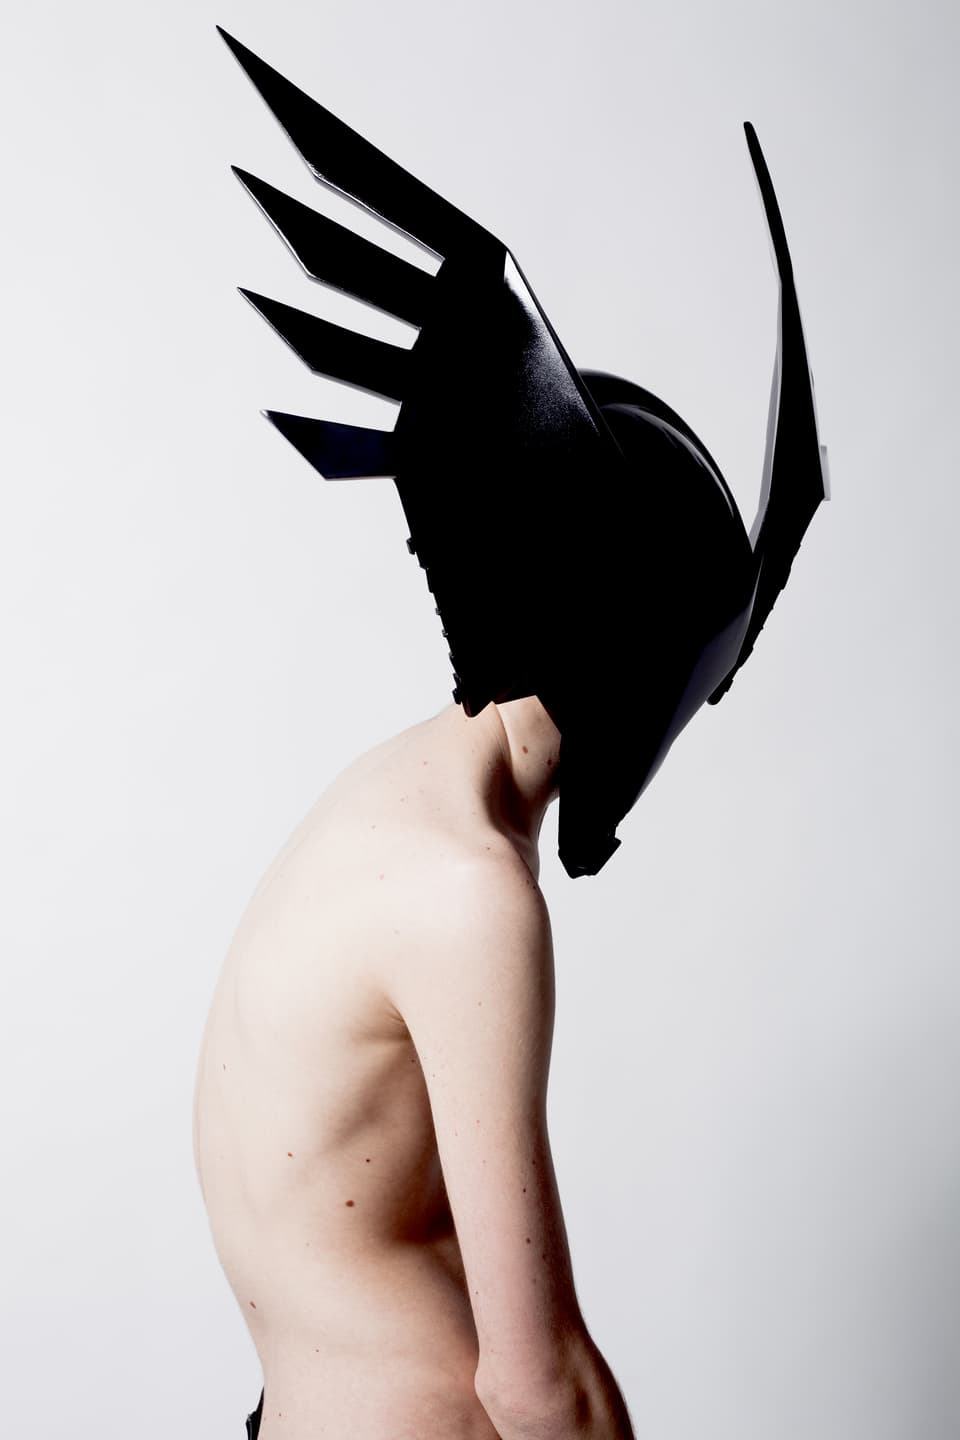 Die Ansicht eines nackten Menschen, der auf dem Kopf eine schwarze, glänzende Maske trägt.